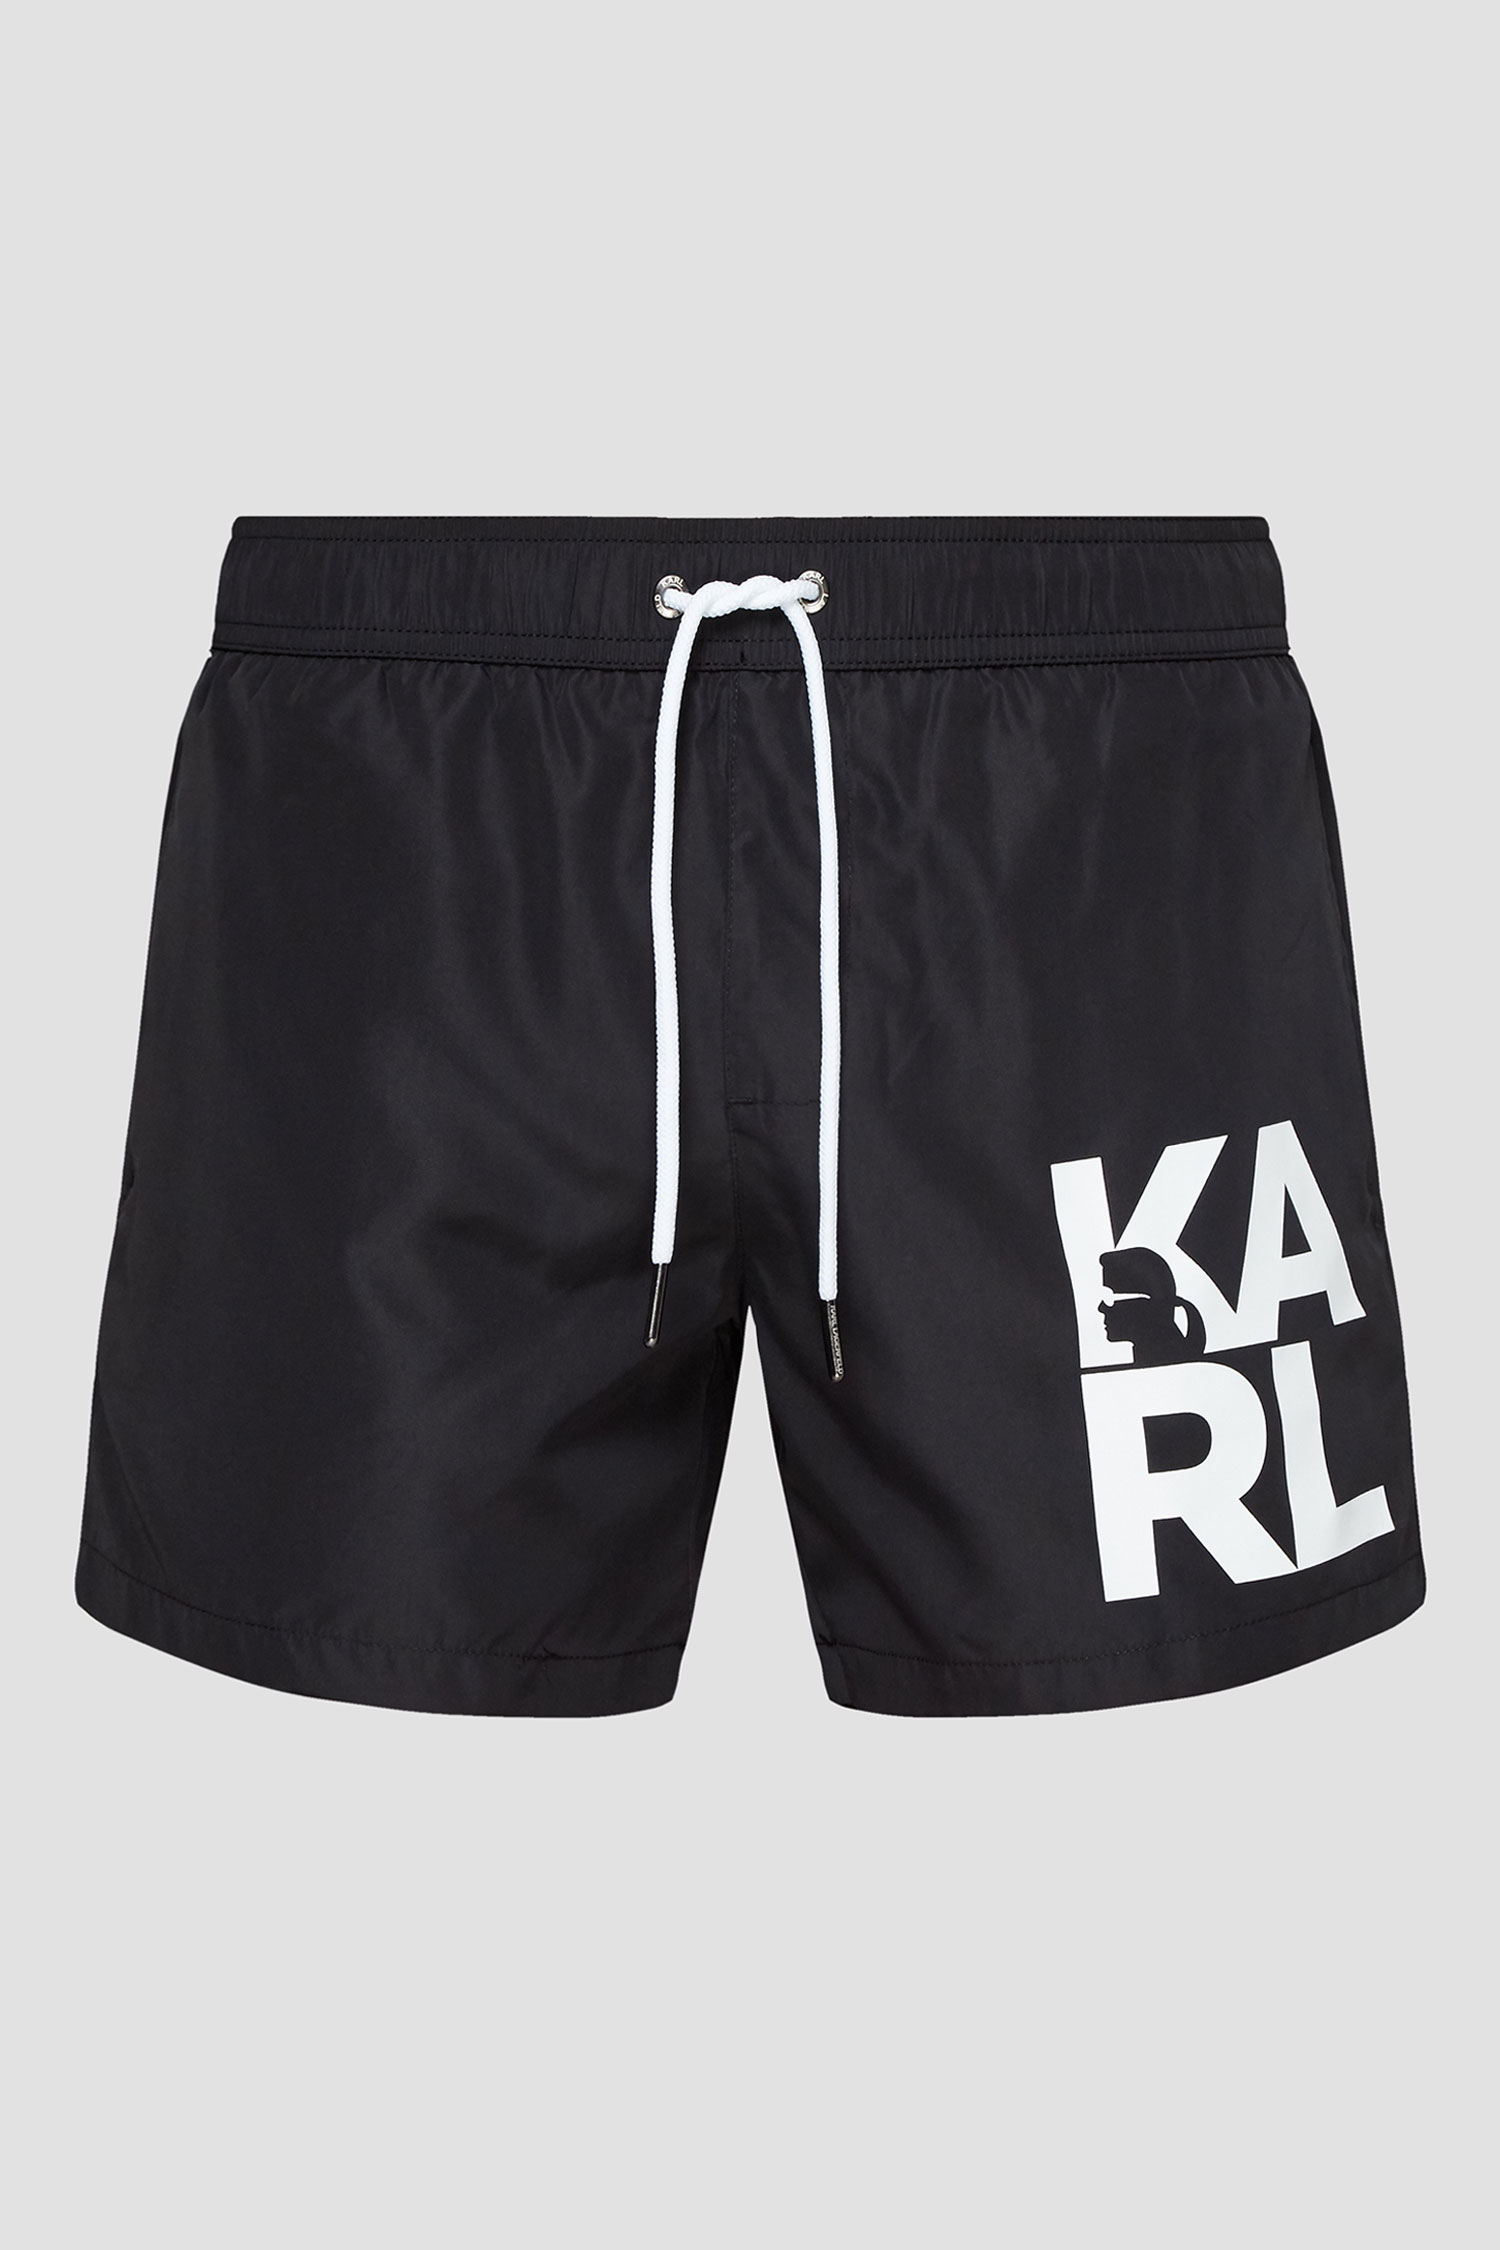 Мужские черные плавательные шорты Karl Lagerfeld KL21MBS02;BLACK